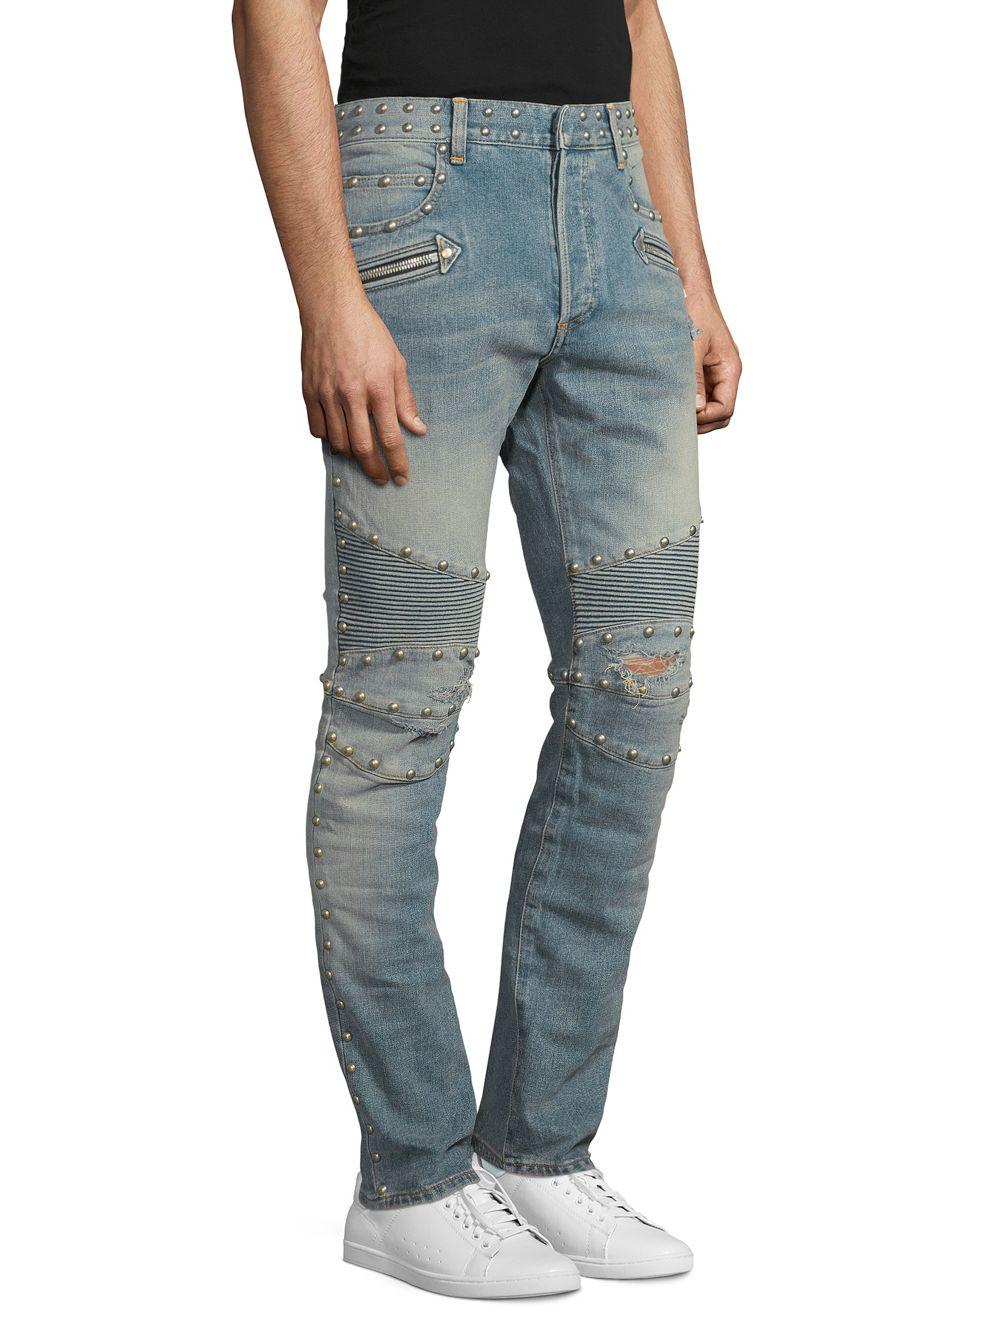 Balmain Denim Studded Moto Skinny Jeans in Blue for Men - Lyst